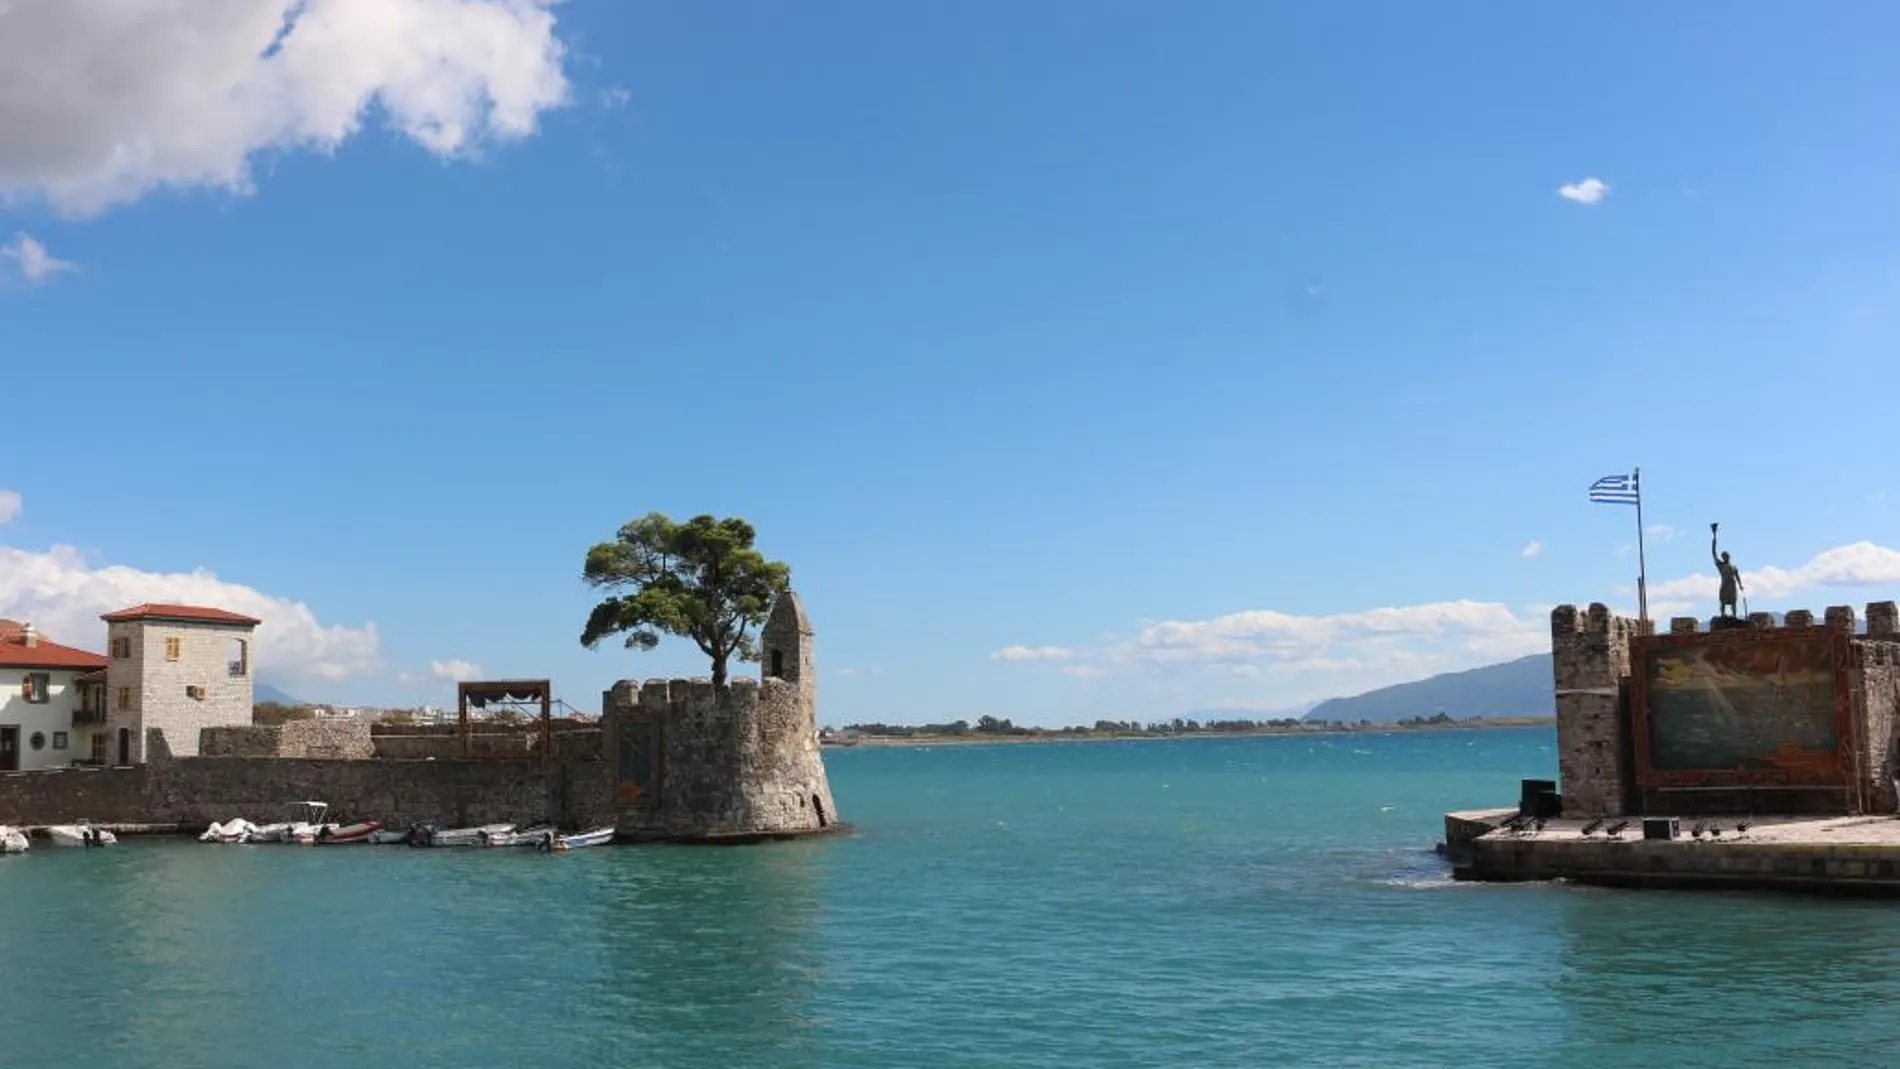 La entrada al puerto de Lepanto es una de las más bellas de Grecia, jalonada por unas murallas almenadas y coronada por la estatua de Miguel de Cervantes, a la derecha